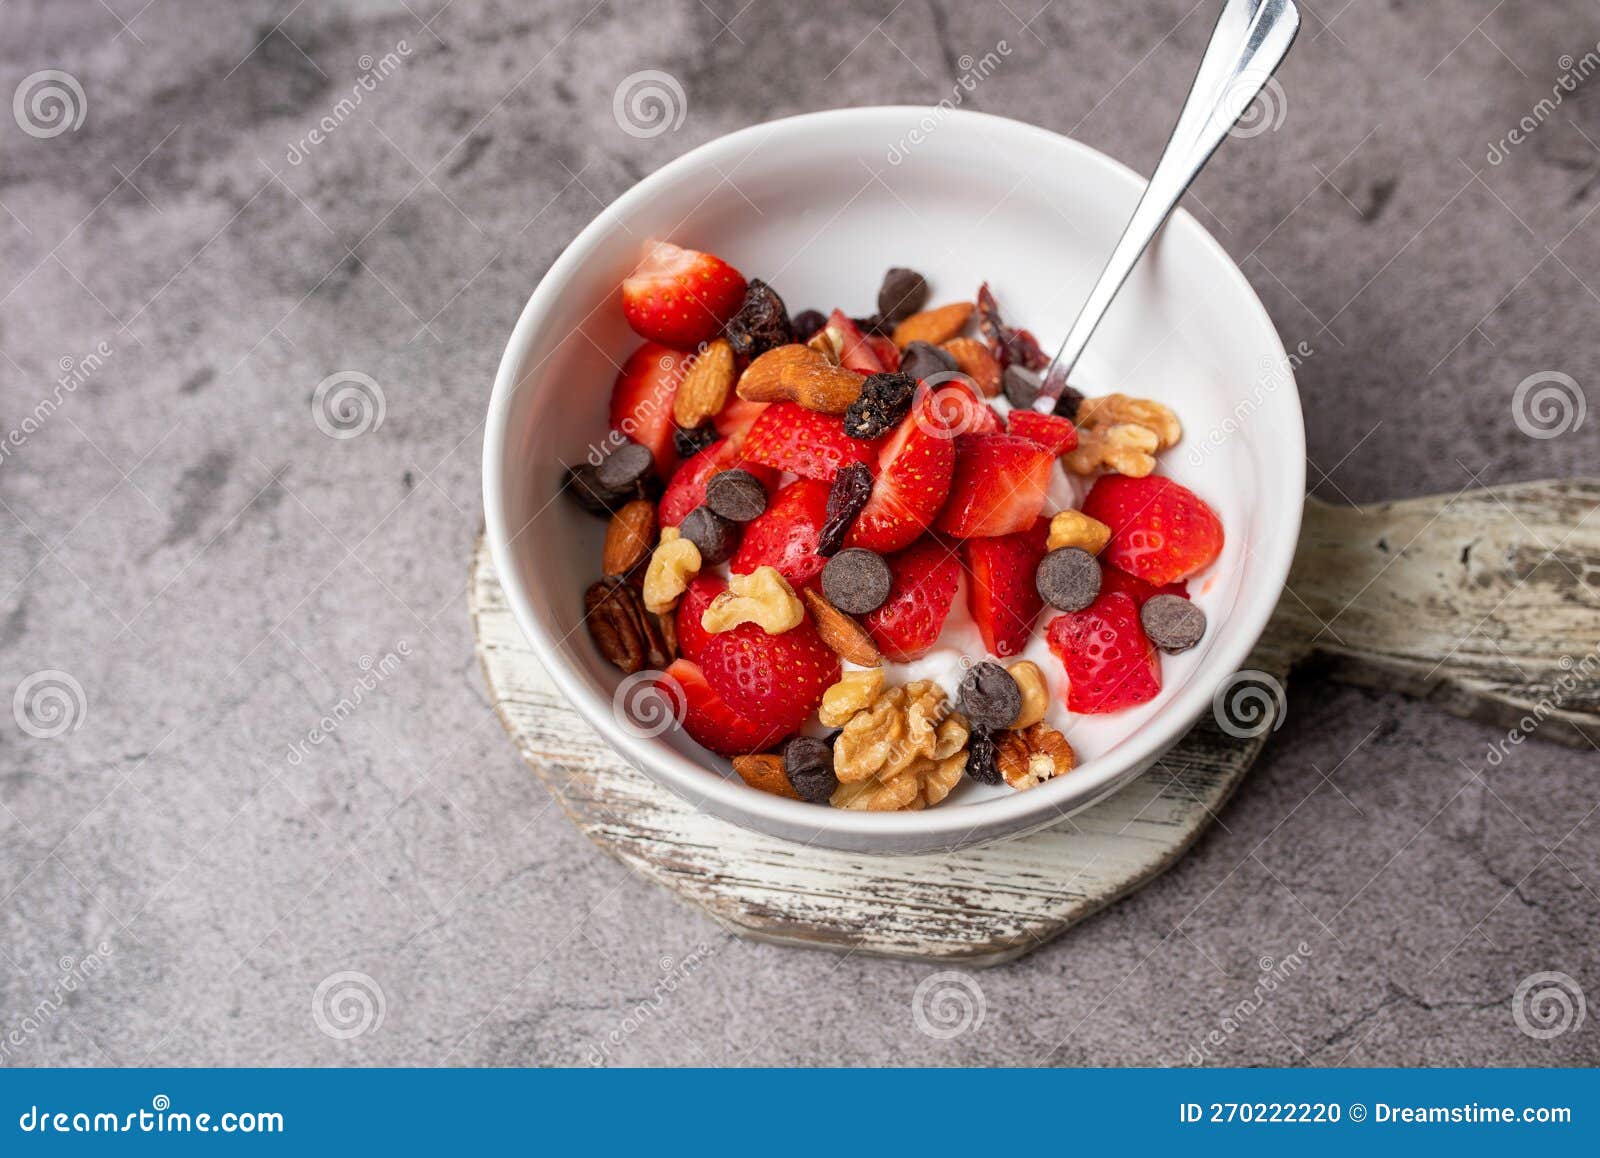 Yogur con Cereales, Nueces y Frutos Rojos